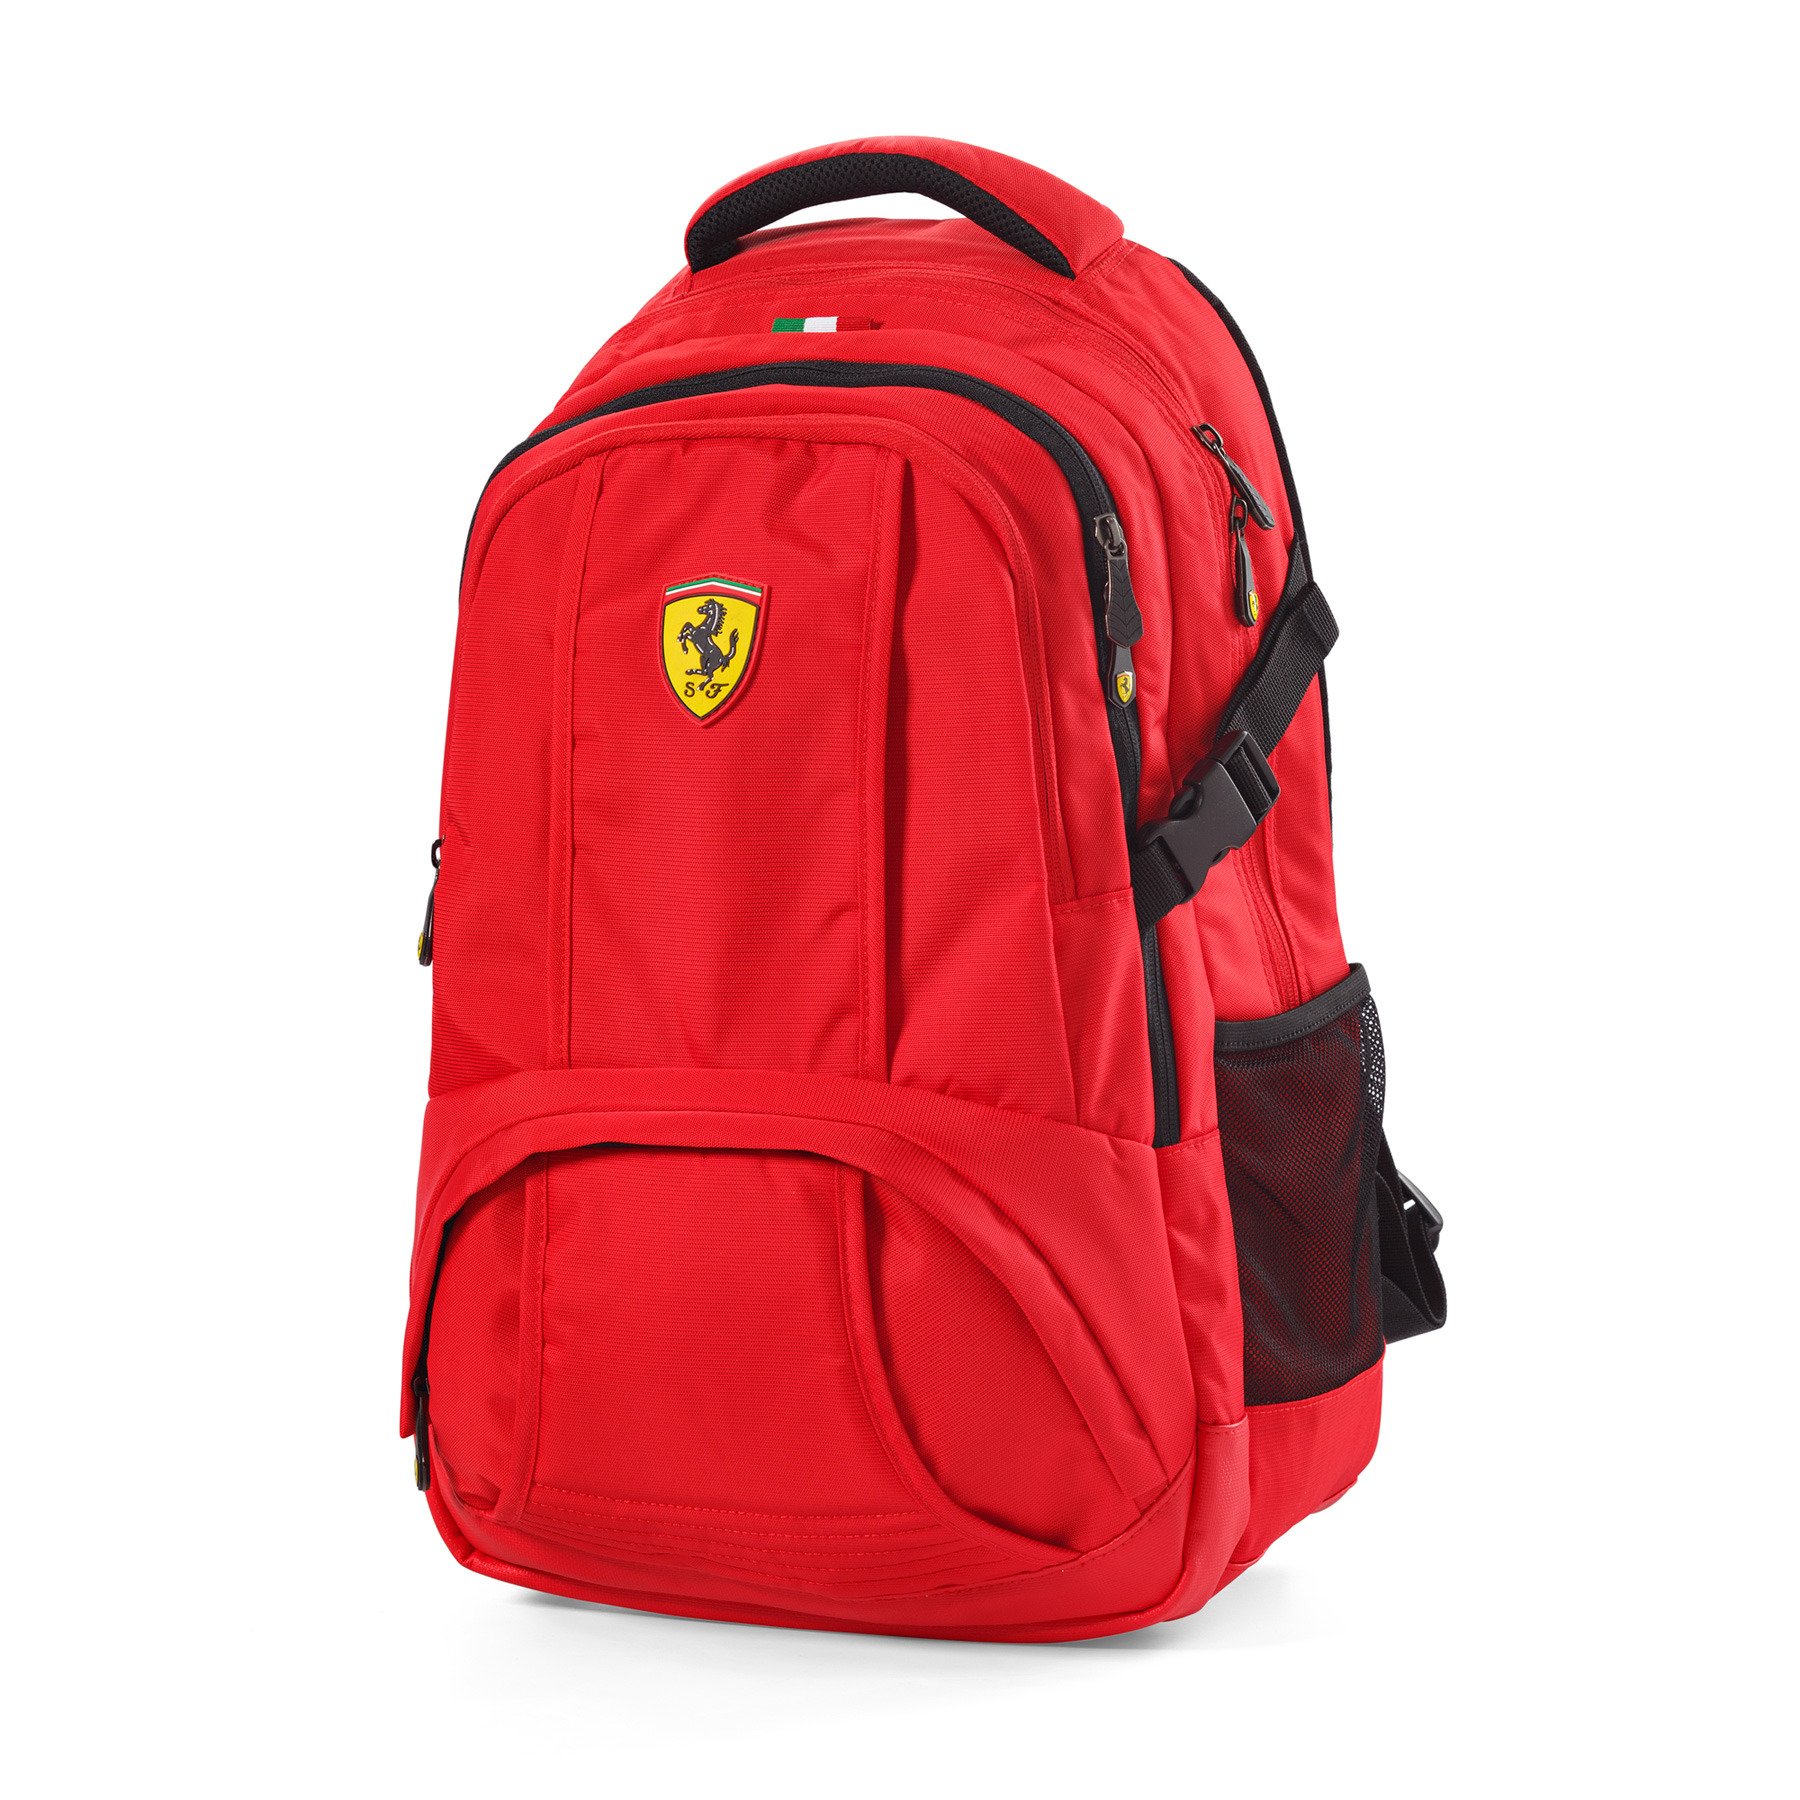 Купить рюкзак в нижнем новгороде. Рюкзак Scuderia Ferrari. Рюкзак Феррари Scuderia Ferrari. Рюкзак Scuderia Ferrari SPTWR Style Backpack. Рюкзак Scuderia Ferrari SPTWR Race Backpack.